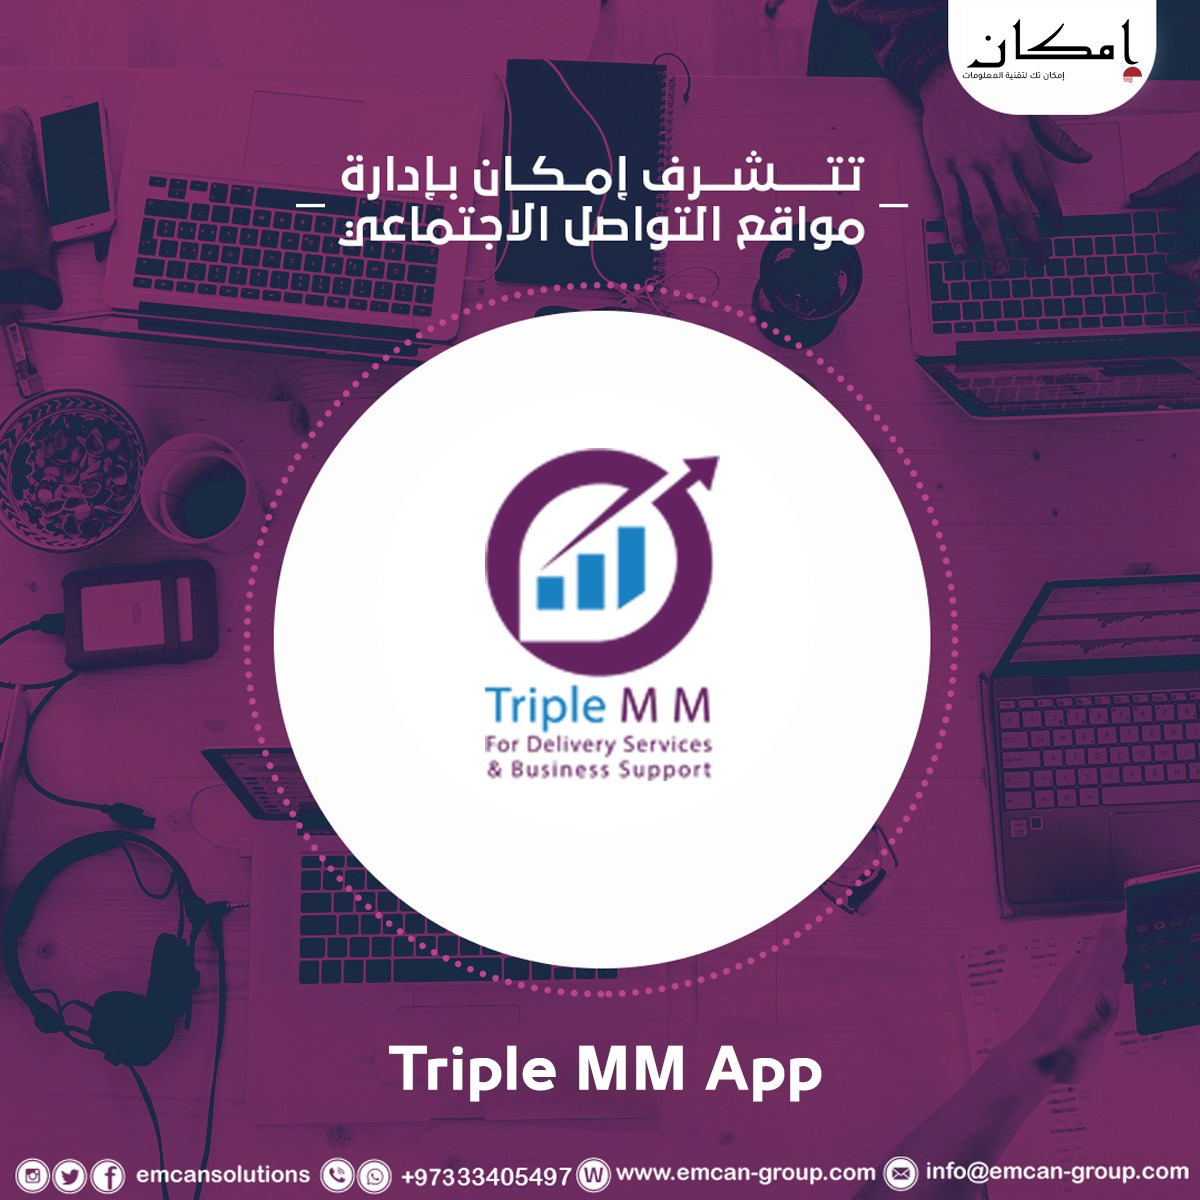 Social media management for Triple MM app